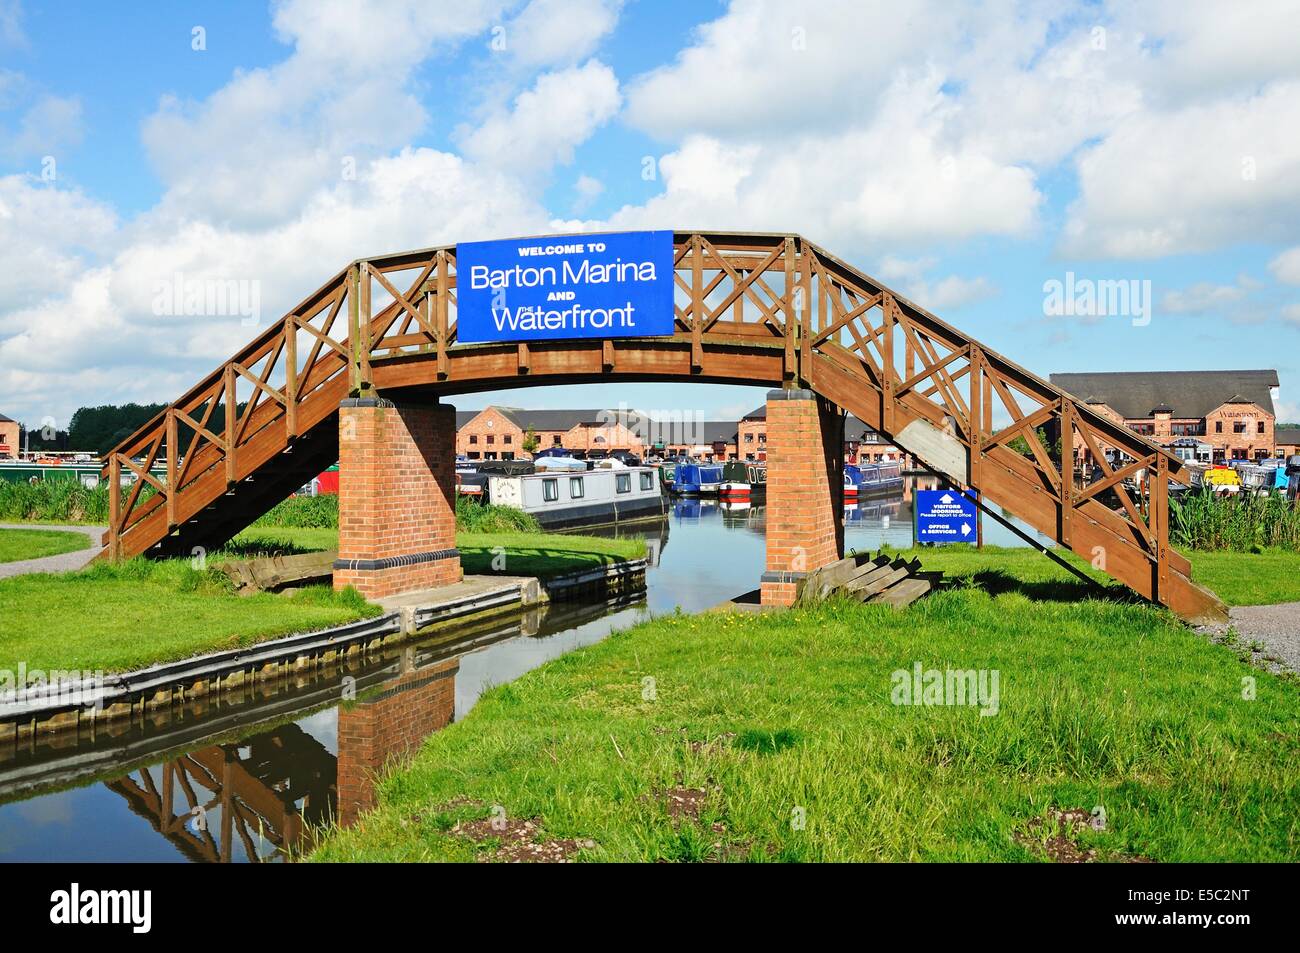 Passerelle avec panneau de bienvenue donnant dans le bassin du canal, Barton Marina, Barton-under-Needwood, Staffordshire, Angleterre, Royaume-Uni. Banque D'Images